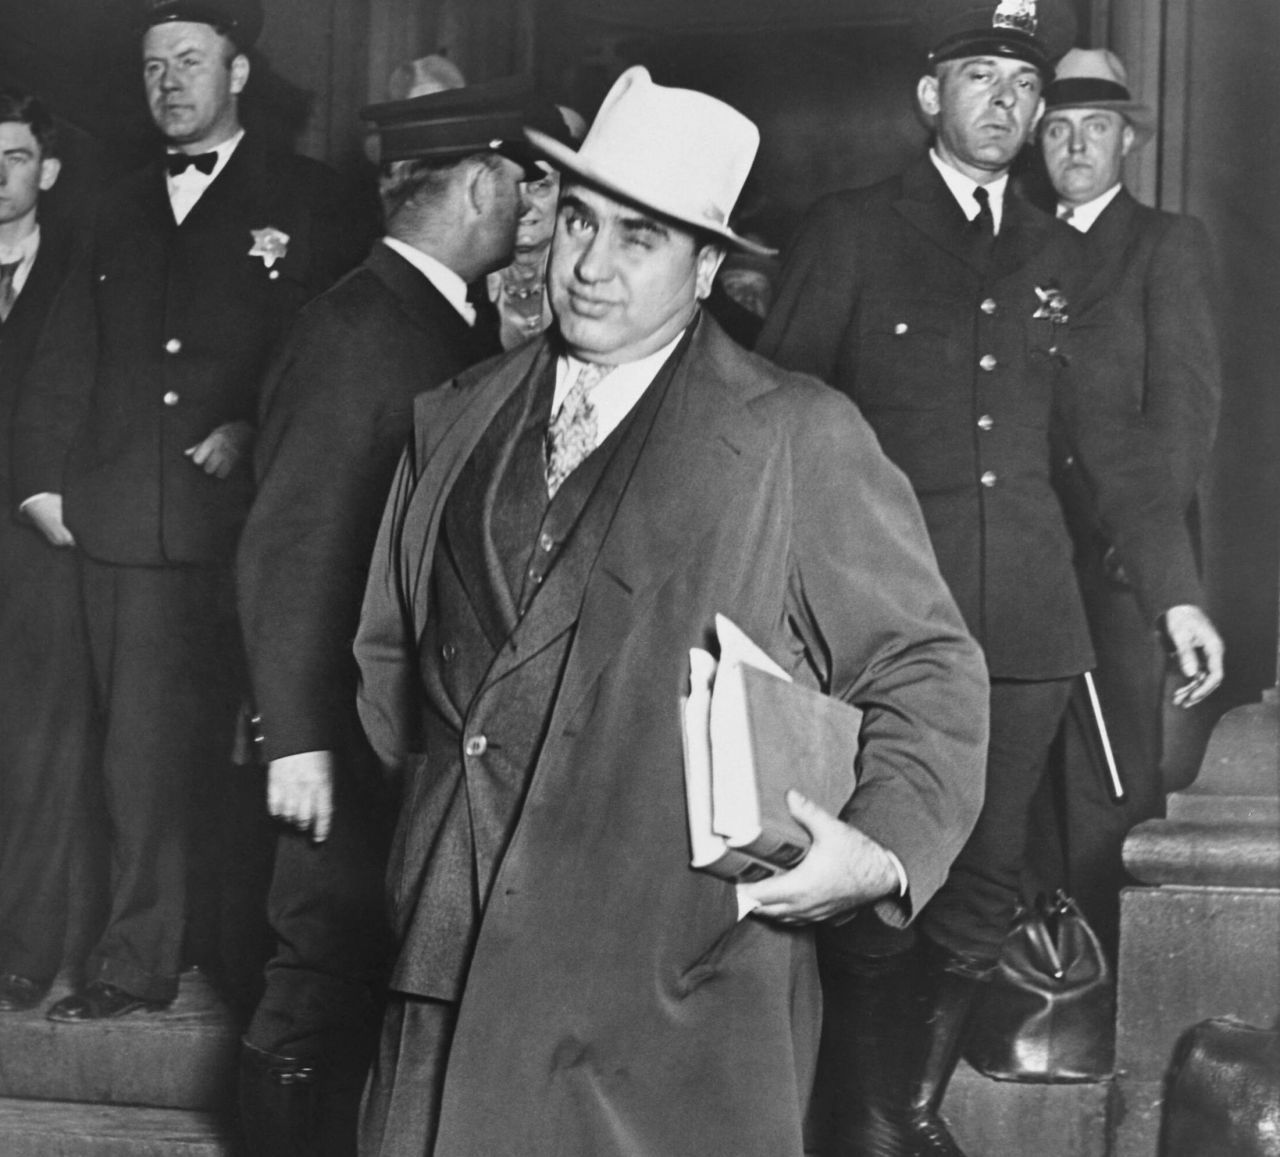 Al Capone gilt als Erfinder der Geldwäsche. Er war einer der berüchtigsten Gangster Amerikas in den 1920er- und 1930er-Jahren und betrieb eine größere Anzahl von Waschsalons. Sein Geld wusch er rein, indem er die illegalen Einnahmen aus Schutzgeld-Erpressung, Glücksspiel, Prostitution und Alkohol-Schmuggel in die Umsätze der Salons einfließen ließ.